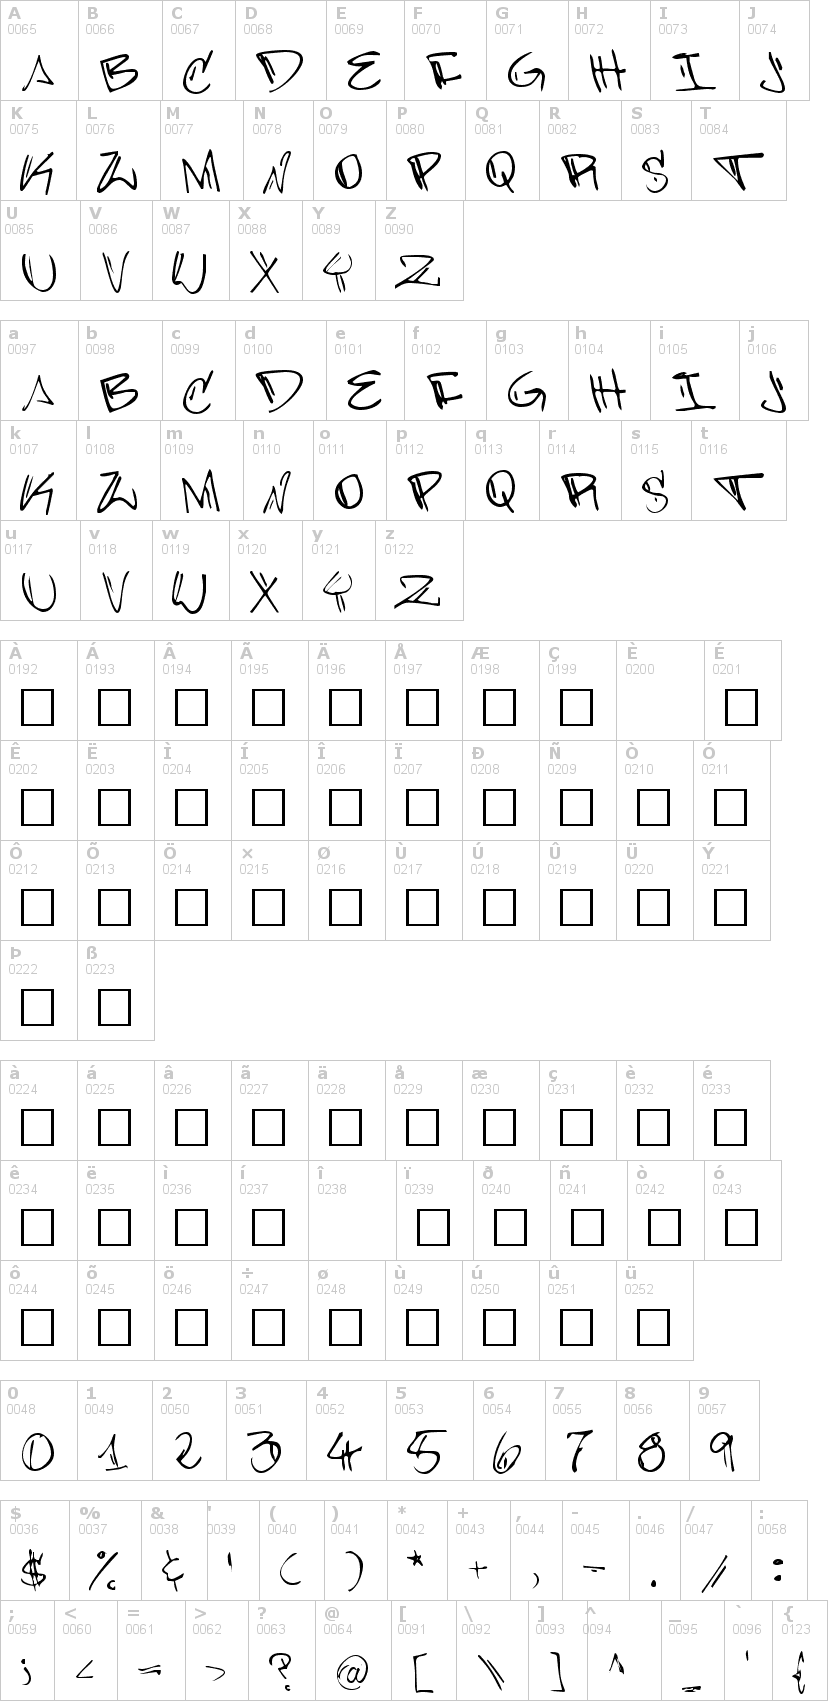 Lettere dell'alfabeto del font barrakuda con le quali è possibile realizzare adesivi prespaziati